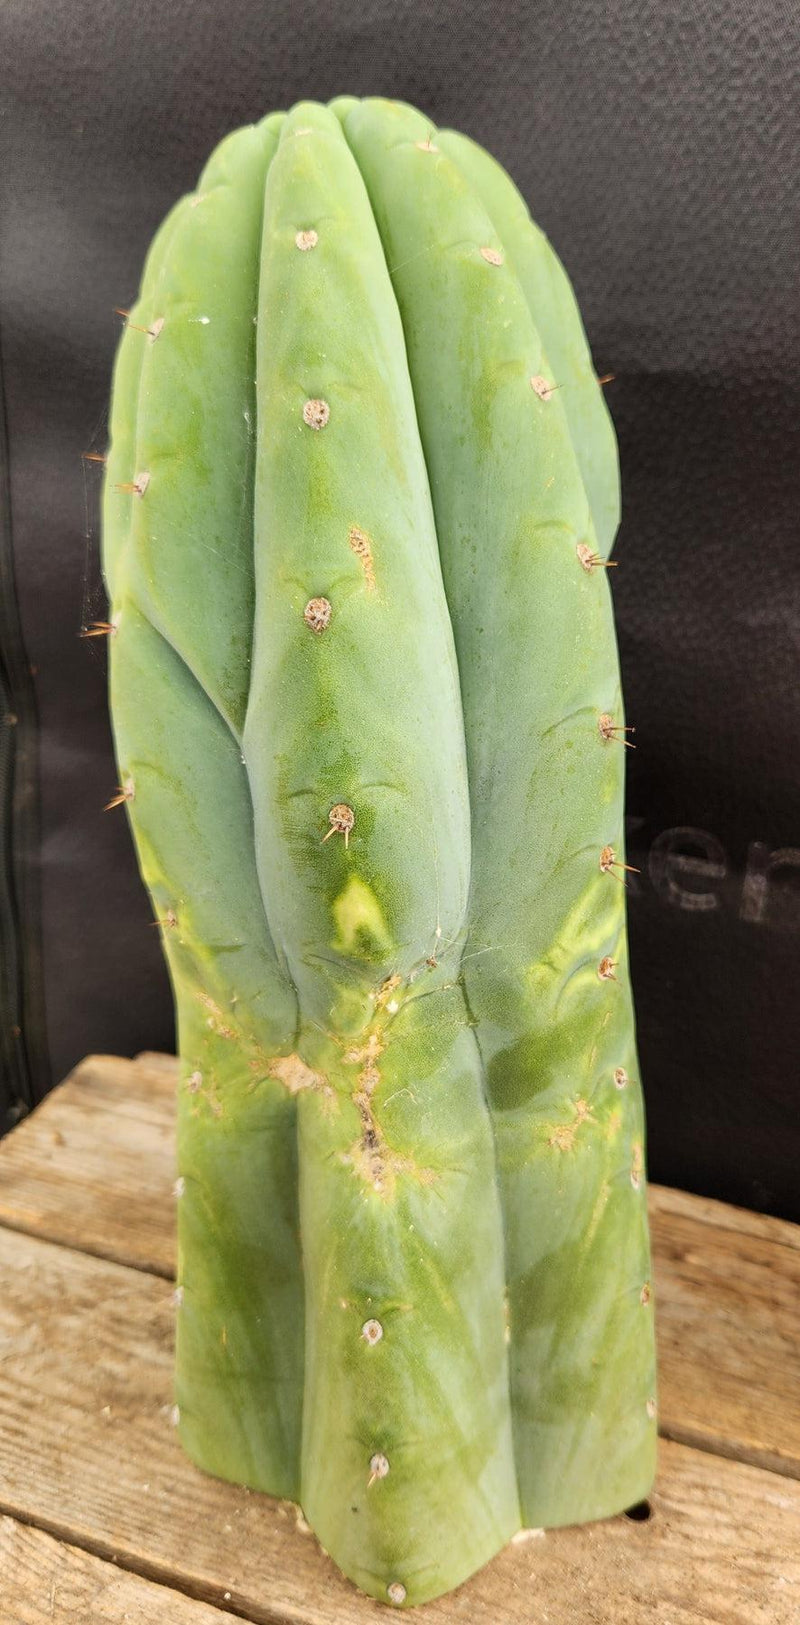 #EC266 EXACT Trichocereus Pachanoi SKIP Cactus Cutting 11.5"